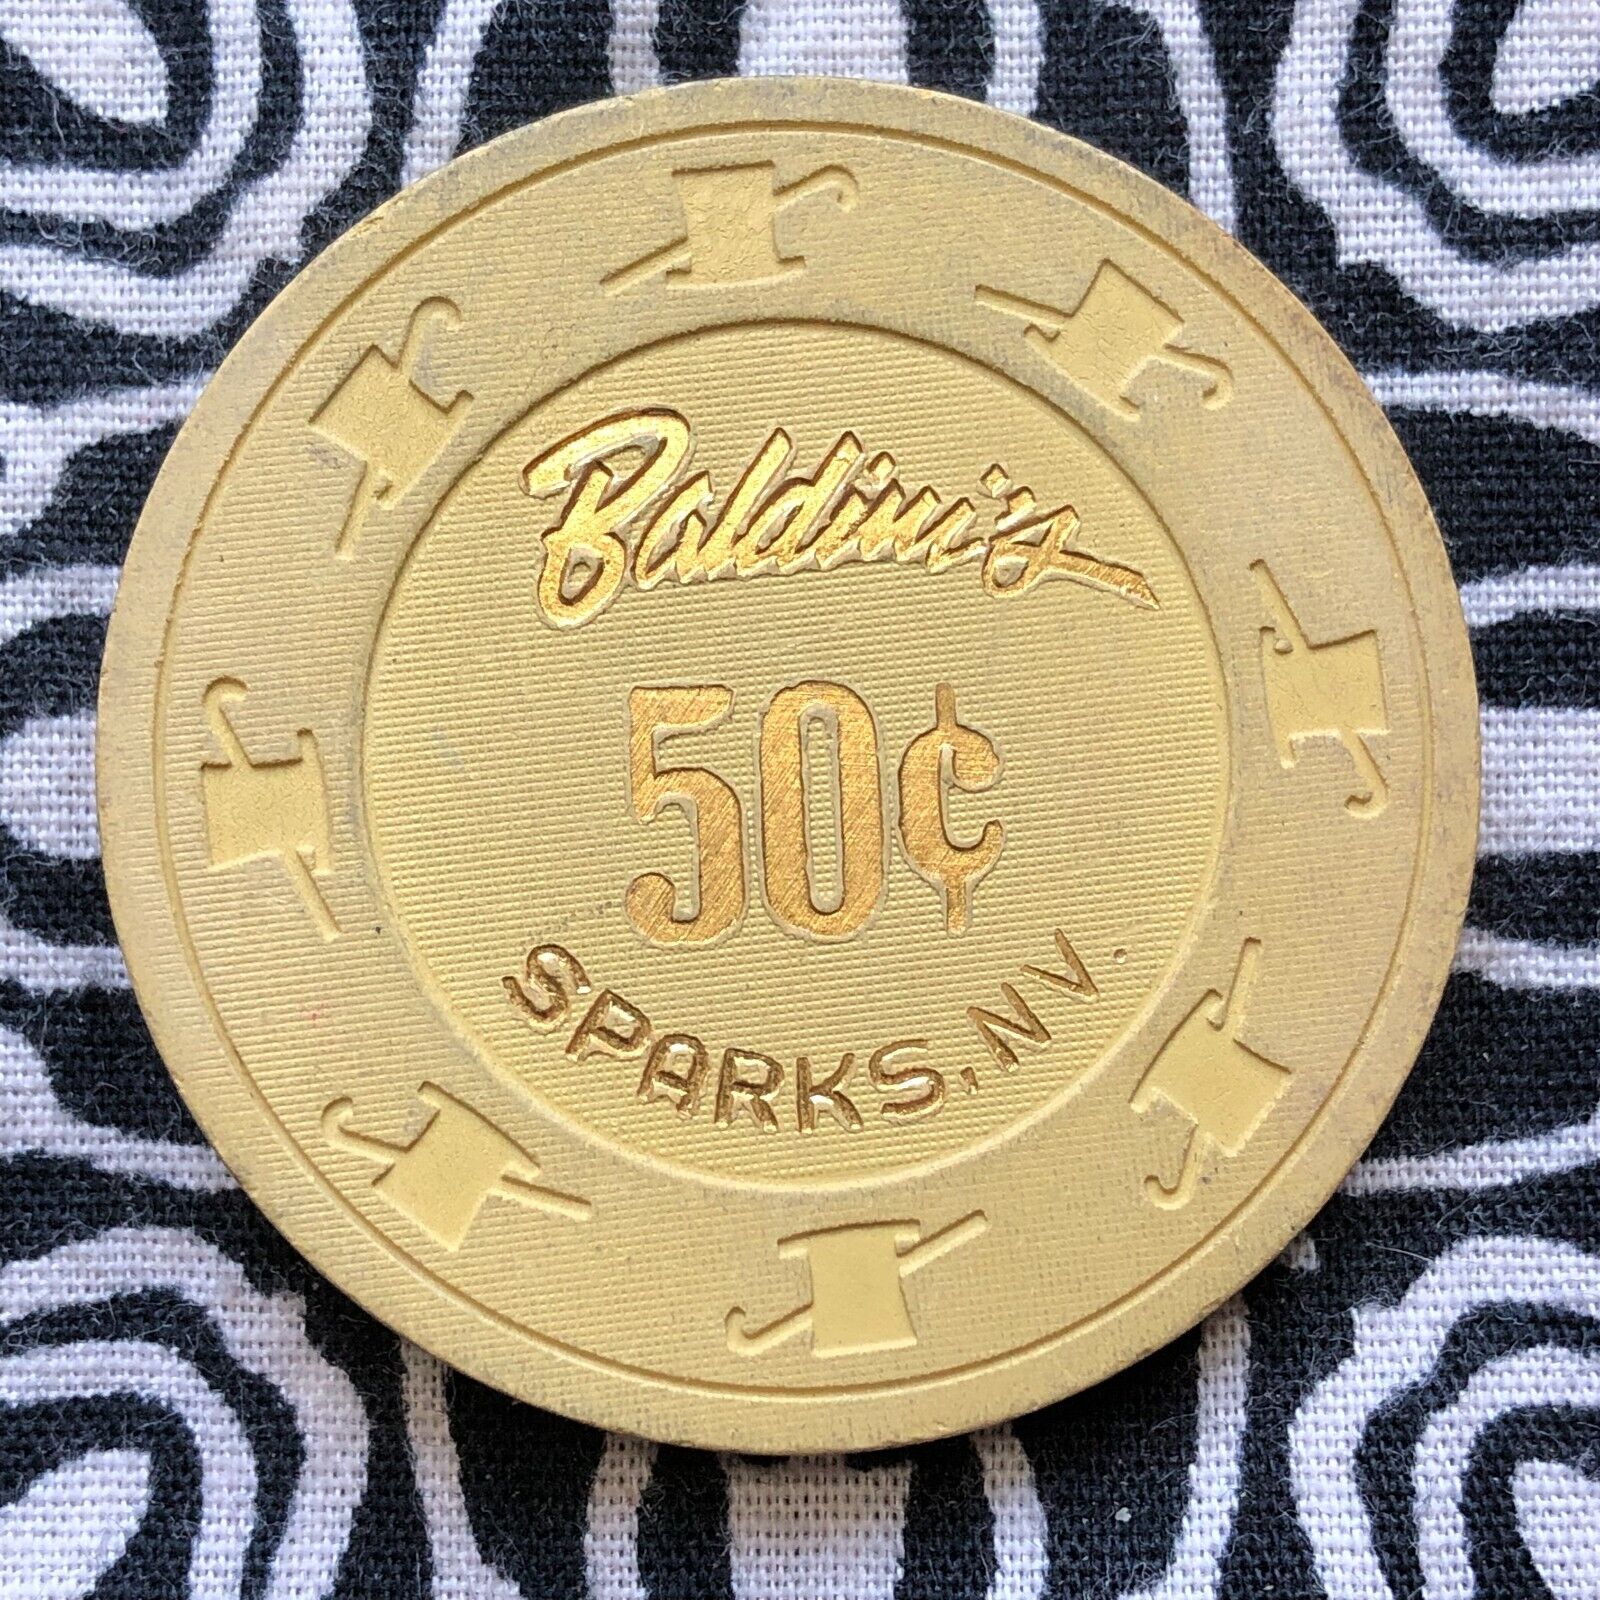 Baldini\'s 50c $0.50 Sparks, Nevada Gaming Poker Casino Chip